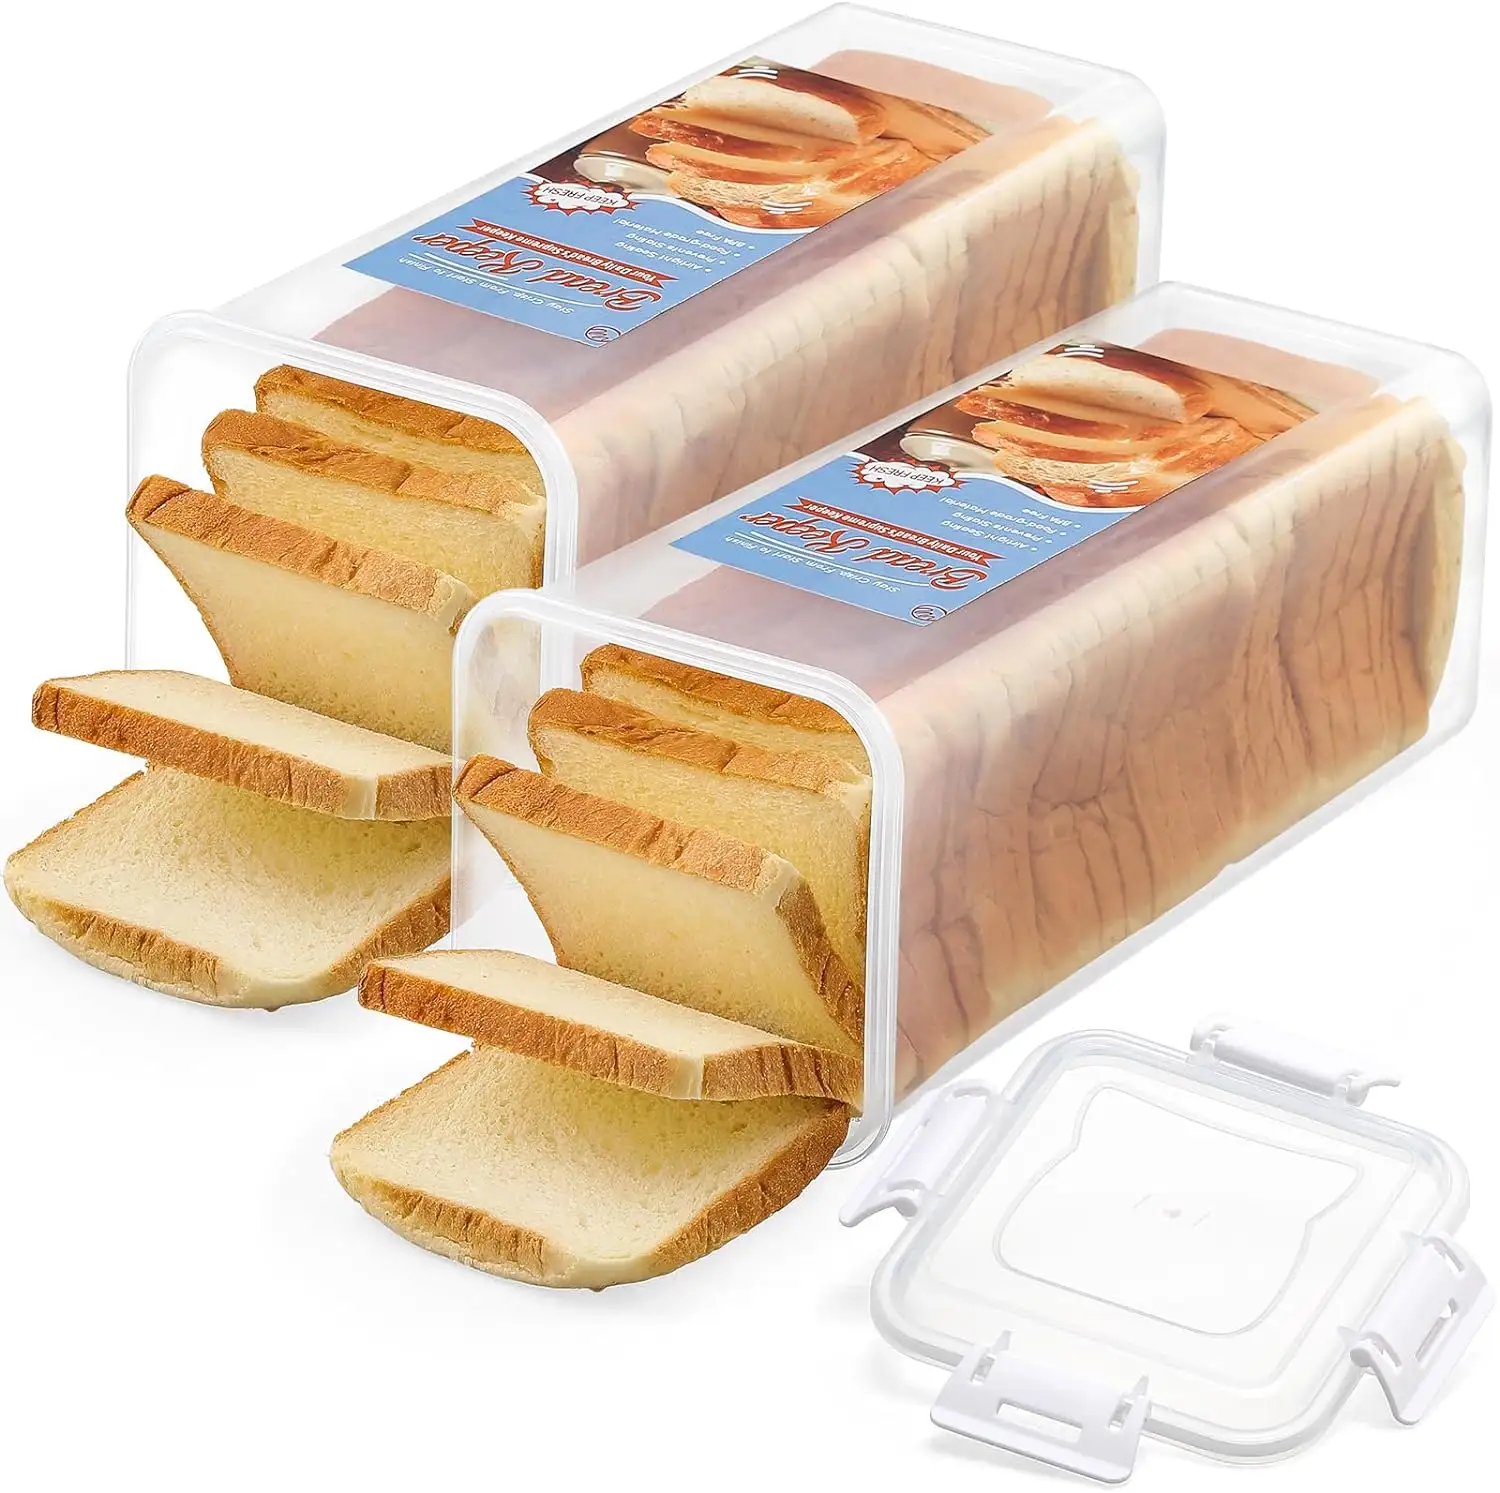 OEM wadah penyimpan roti segar, wadah penyimpan roti segar, kotak plastik Sandwich roti dengan tutup kedap udara